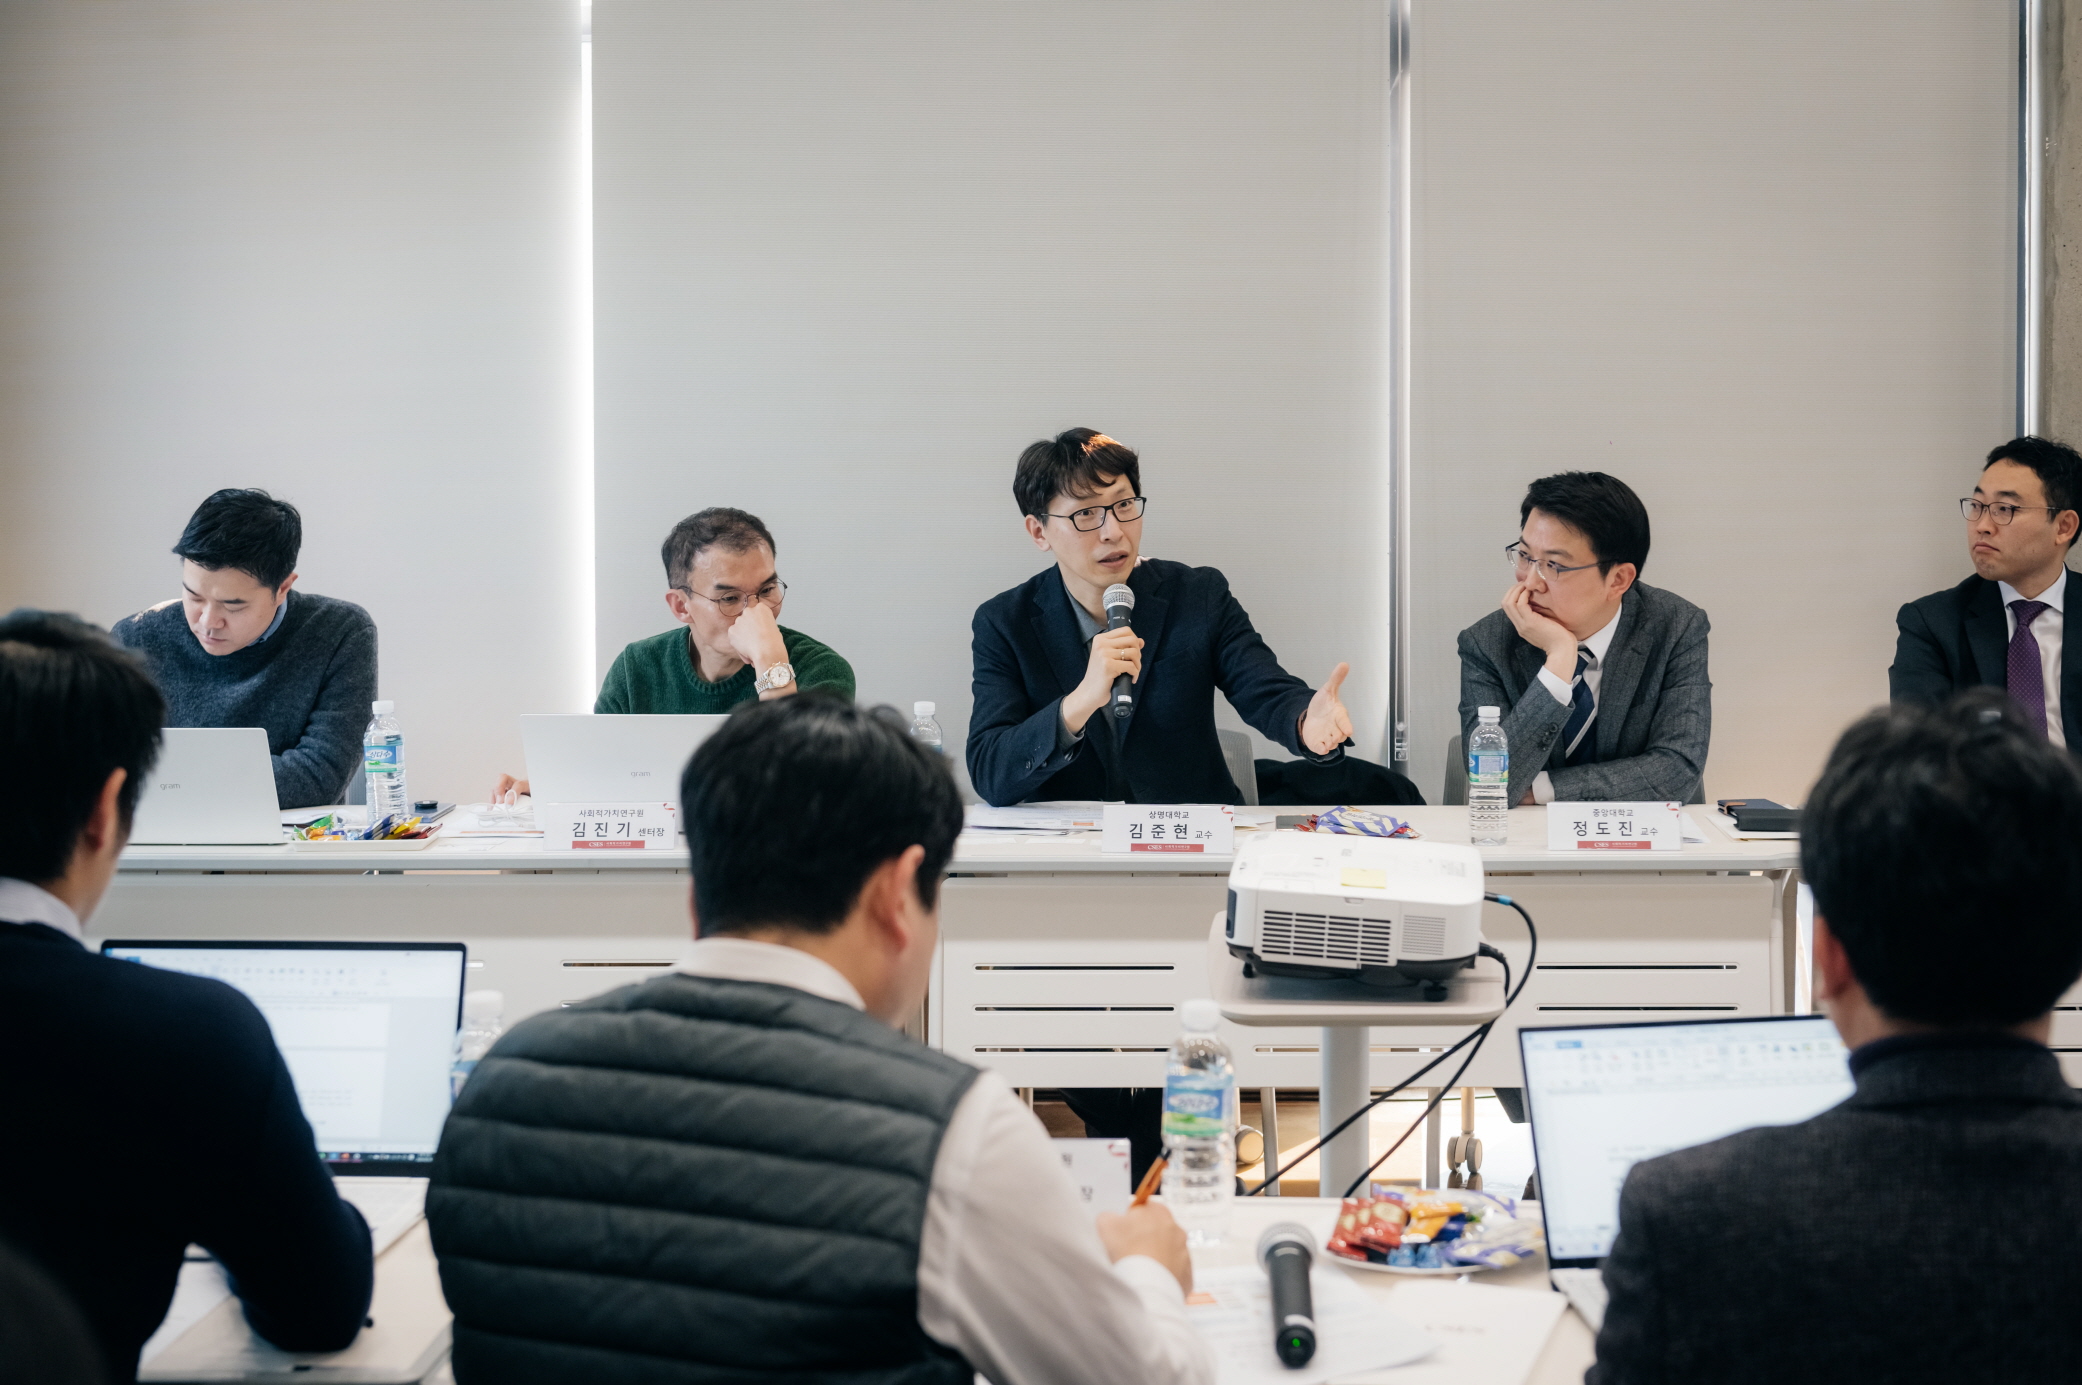 김준현 교수(상명대)가 회의에 대한 토론을 하고 있는 사진